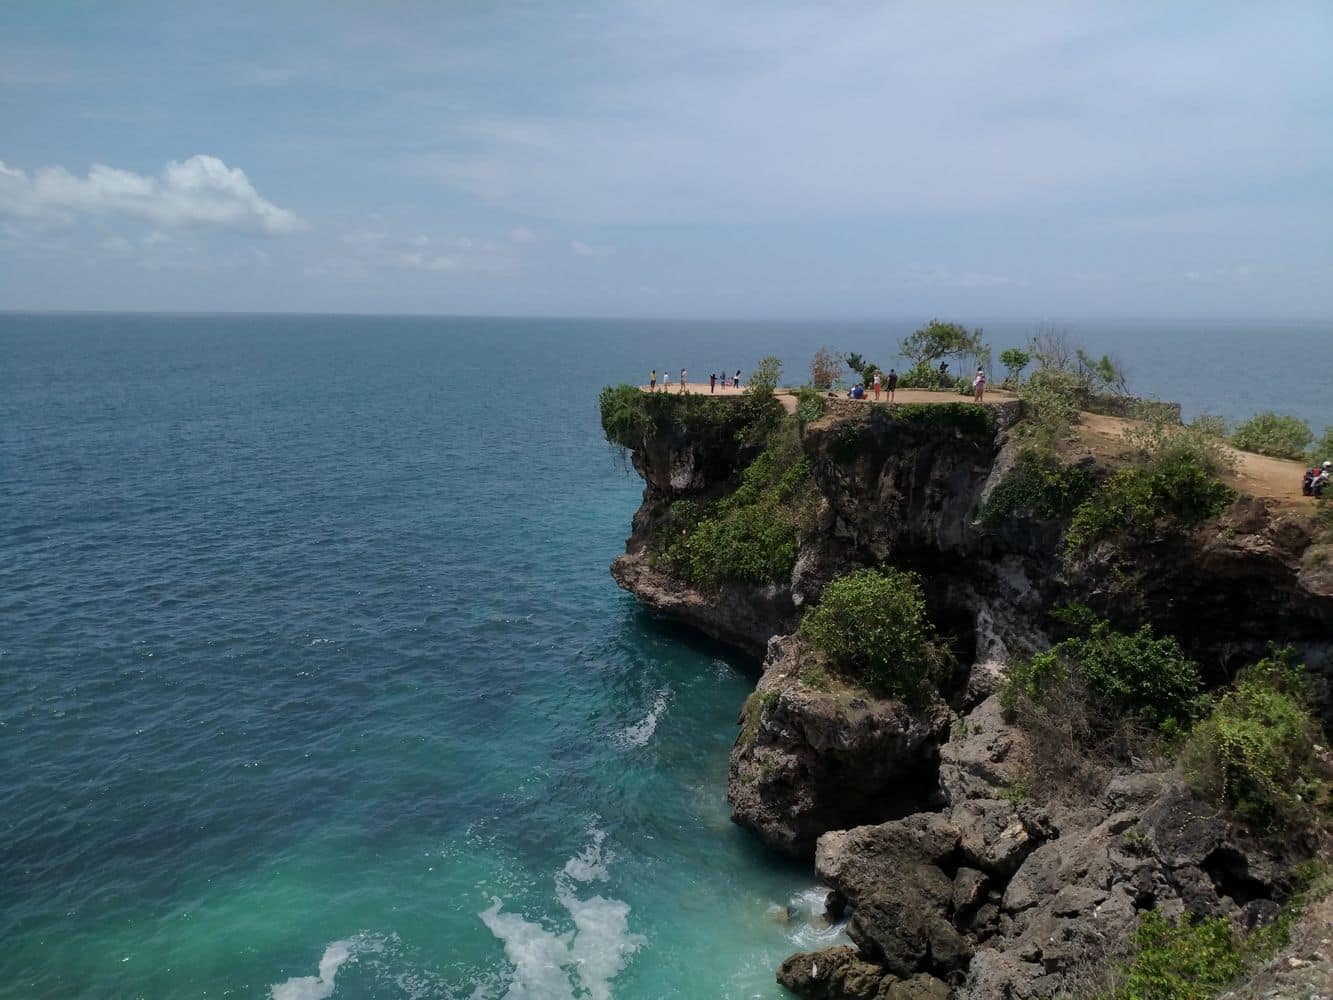  Balangan  Beach Bali  Hotel Accommodation Resorts Villas